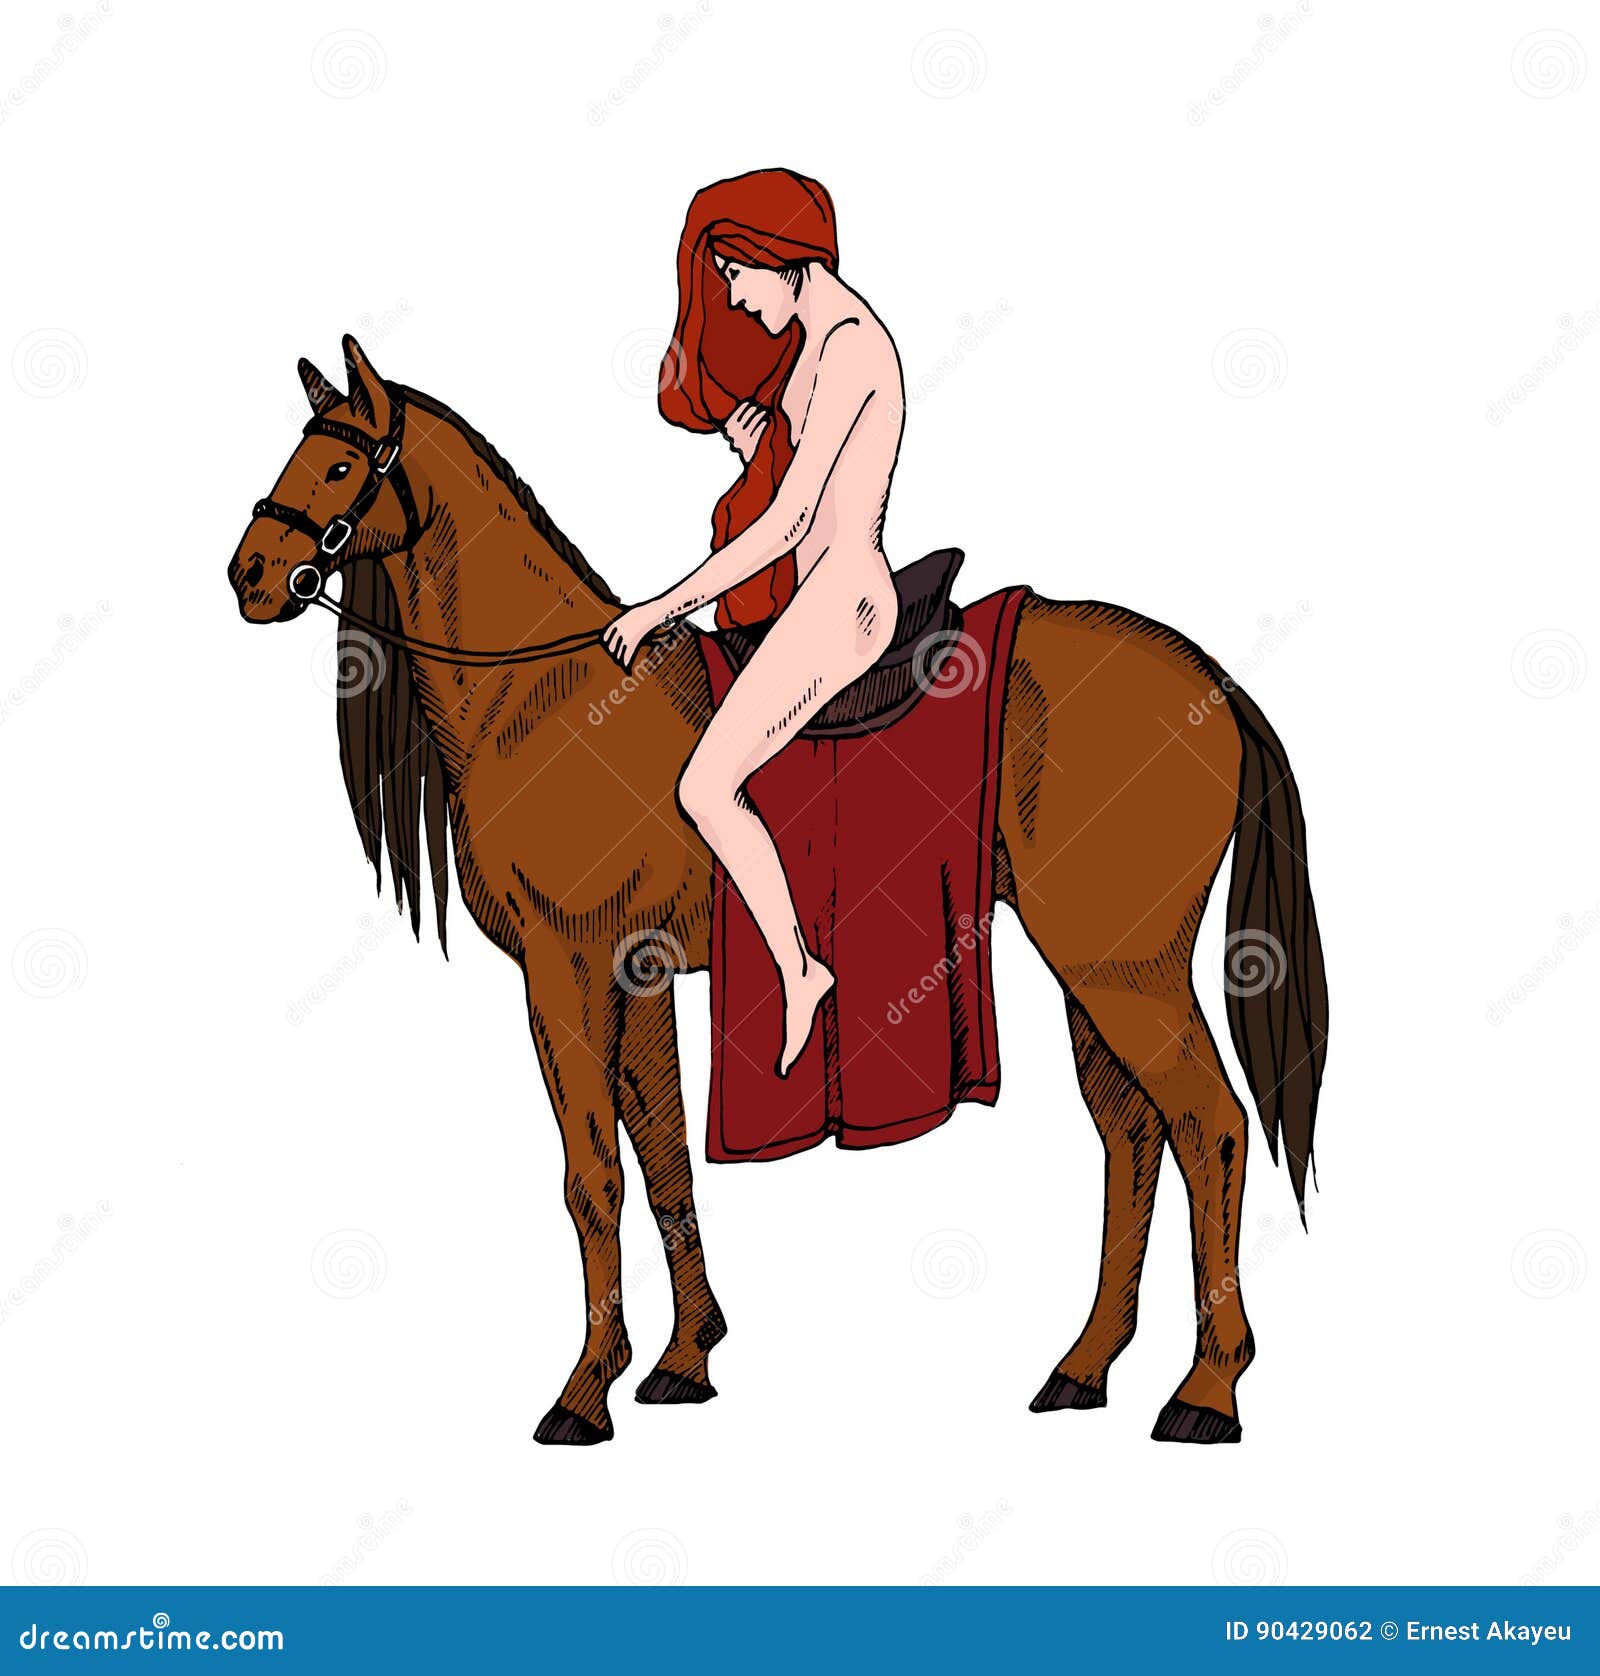 Nackt auf pferd reiten